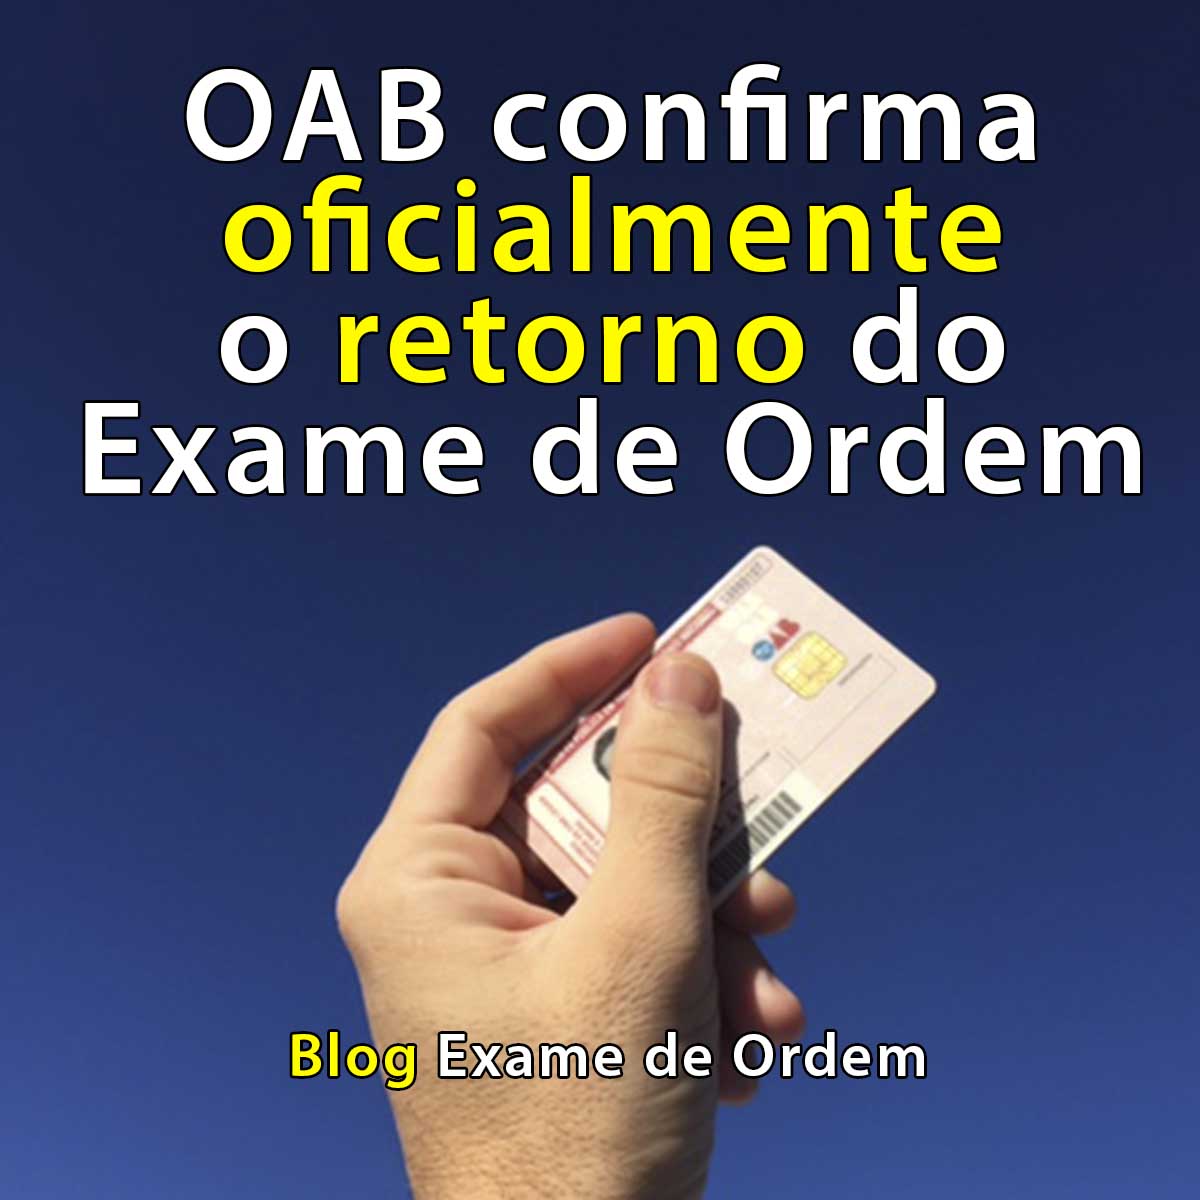 OAB confirma oficialmente o retorno do Exame de Ordem